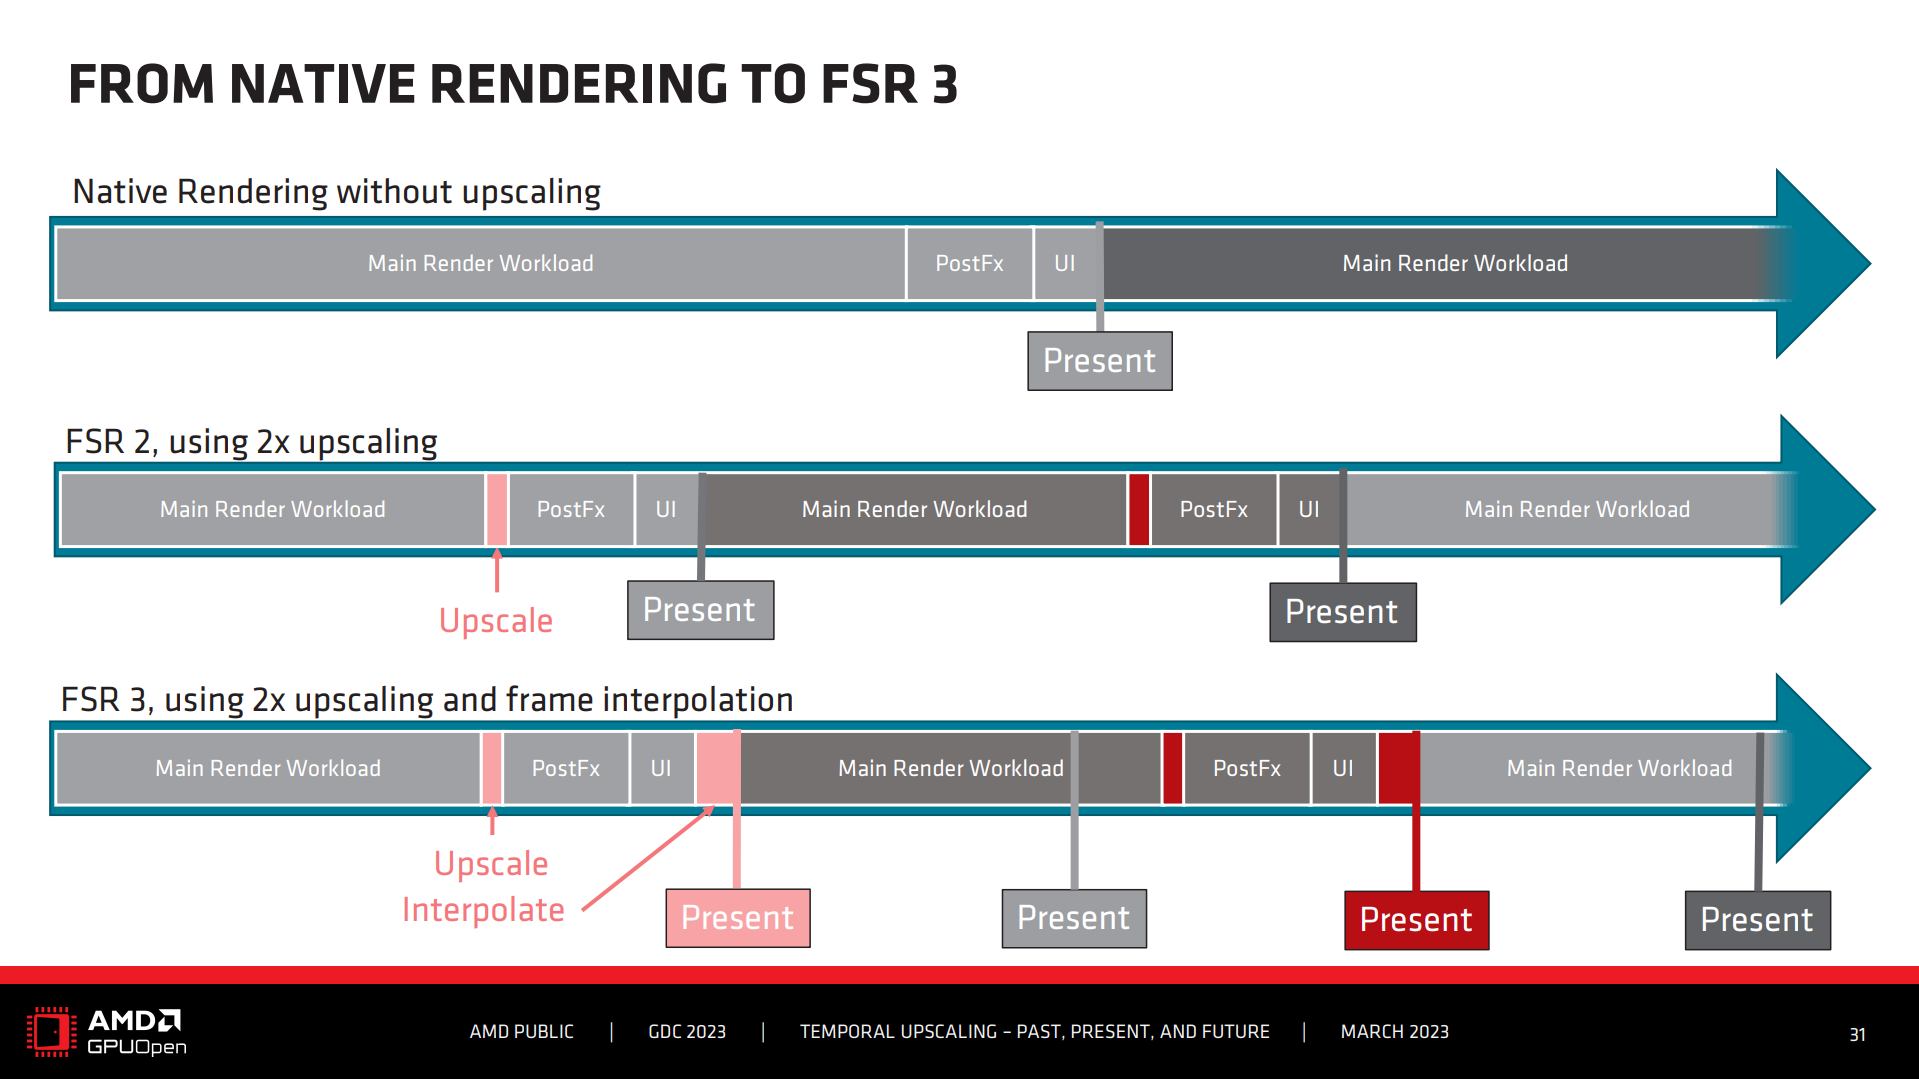 The rendering pipeline for FSR 3.